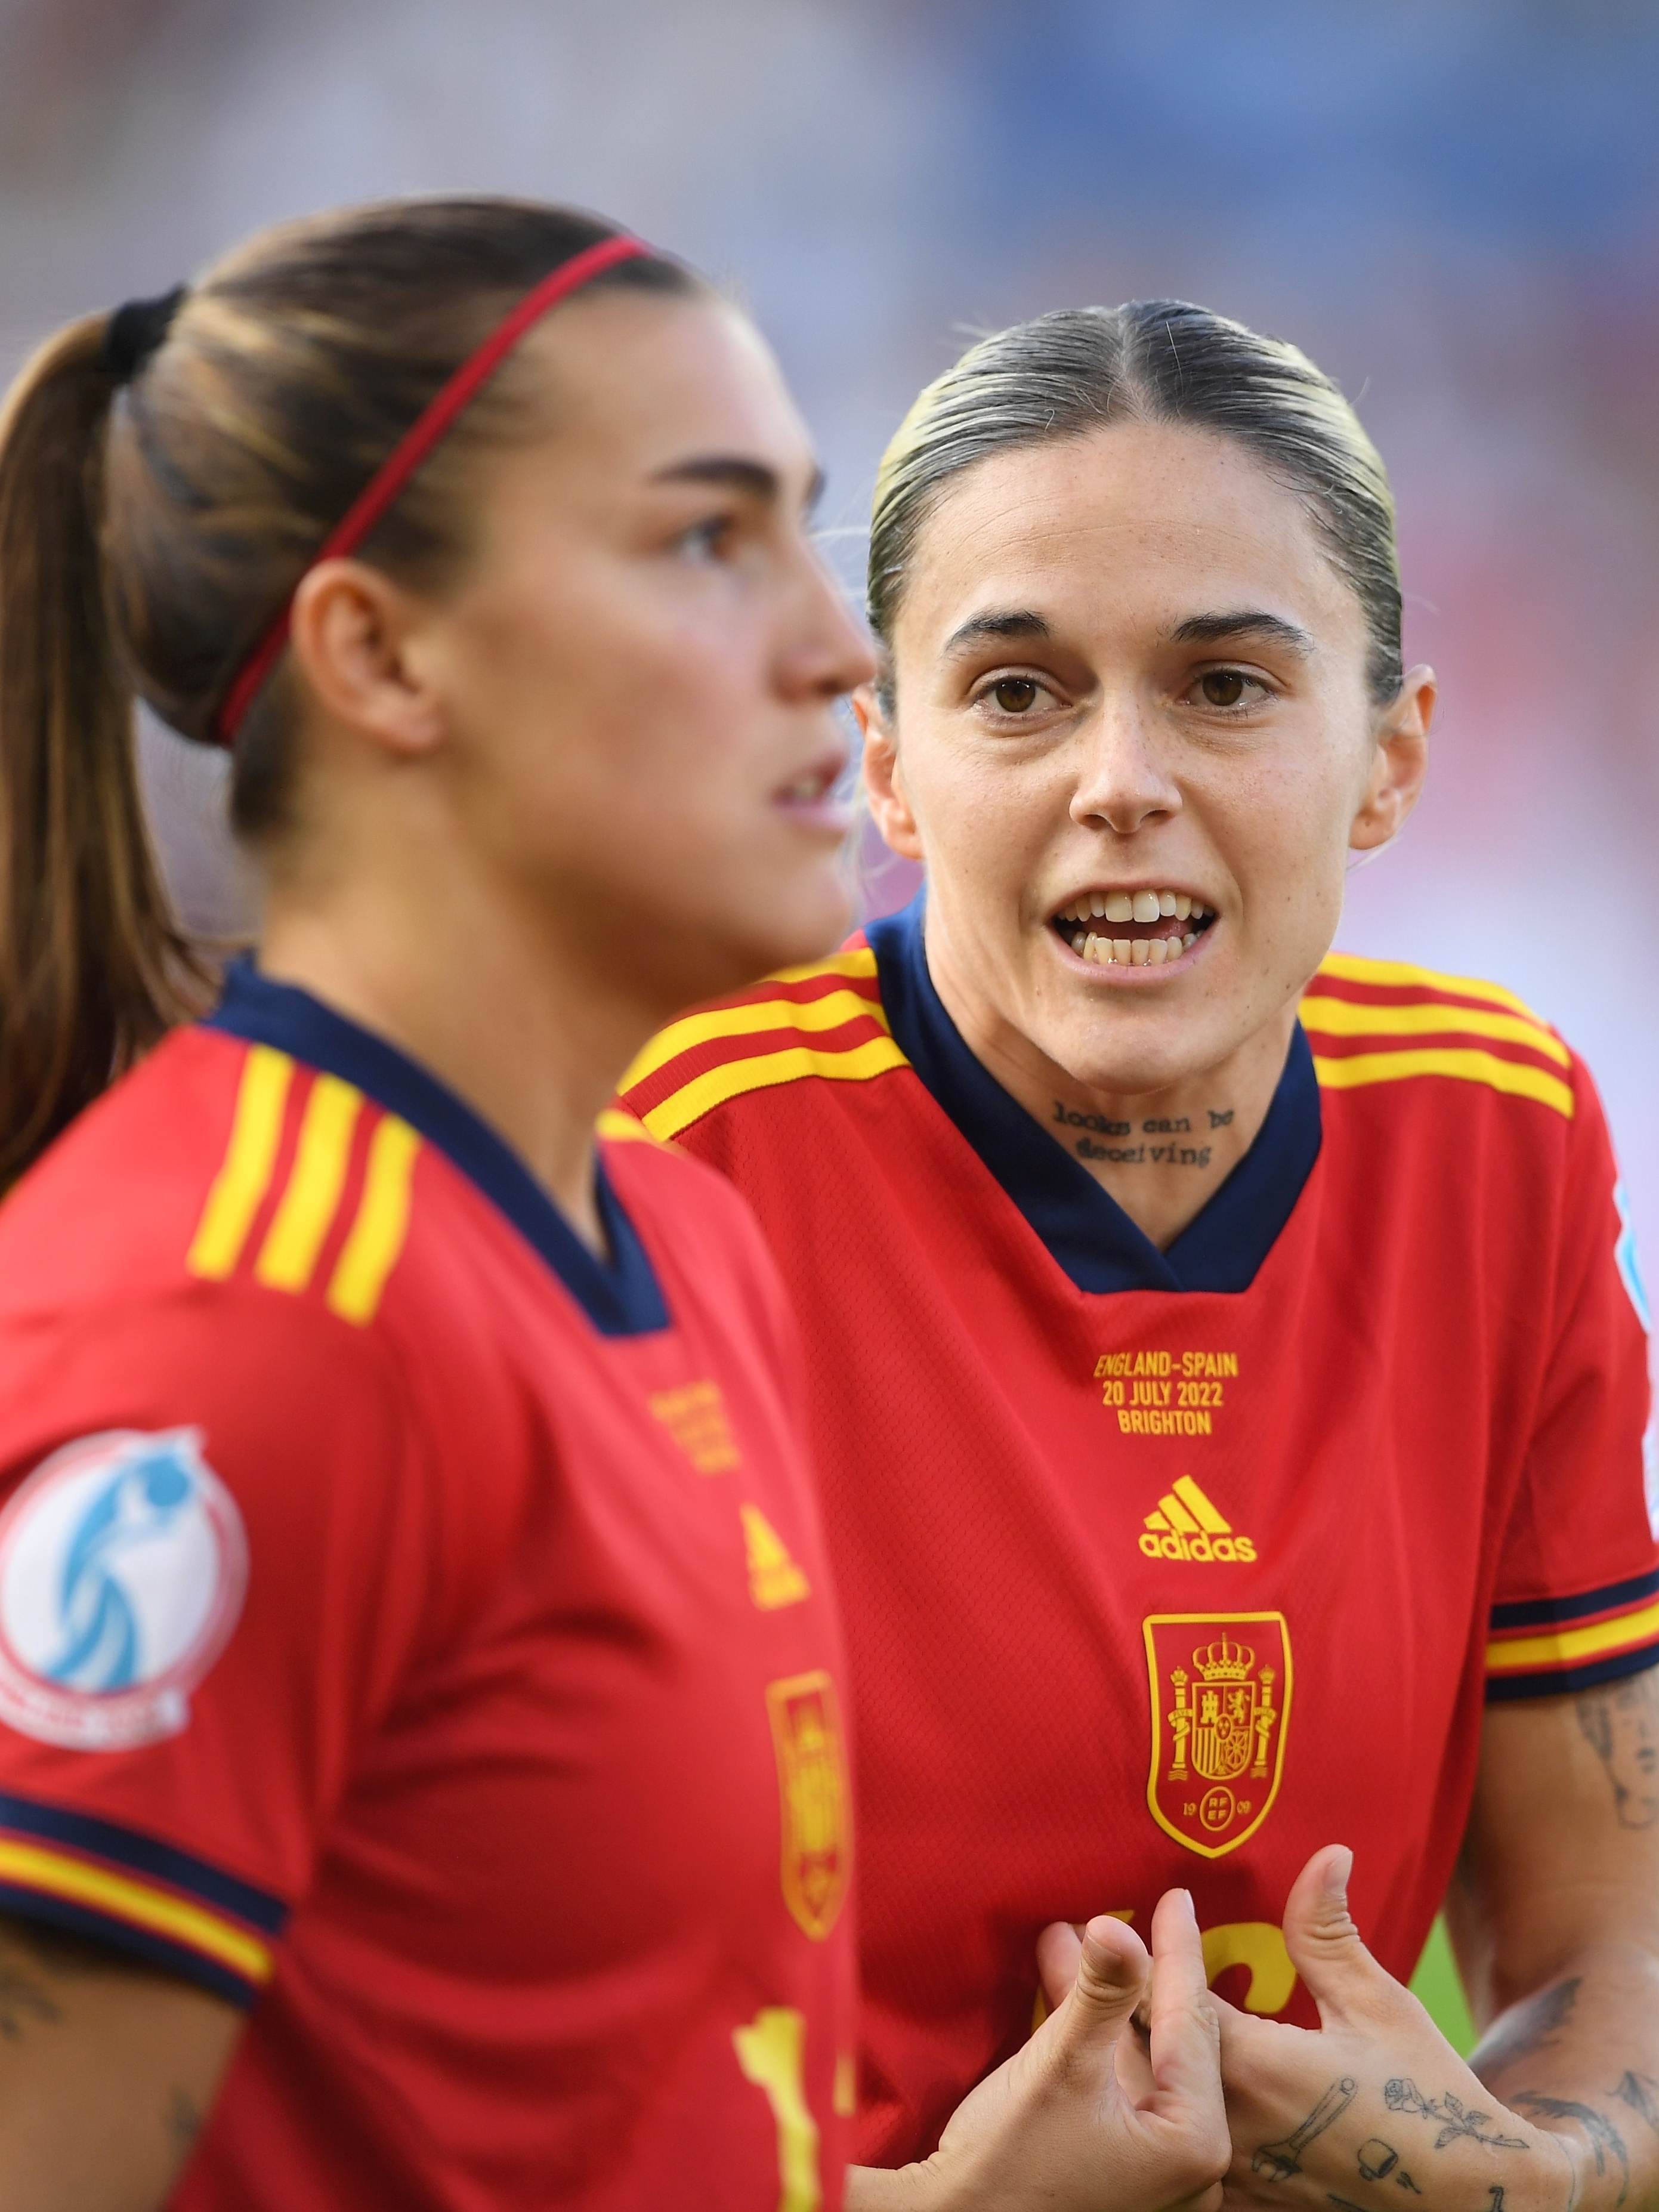 Copa do Mundo feminina tem boicotes e demanda por salários iguais